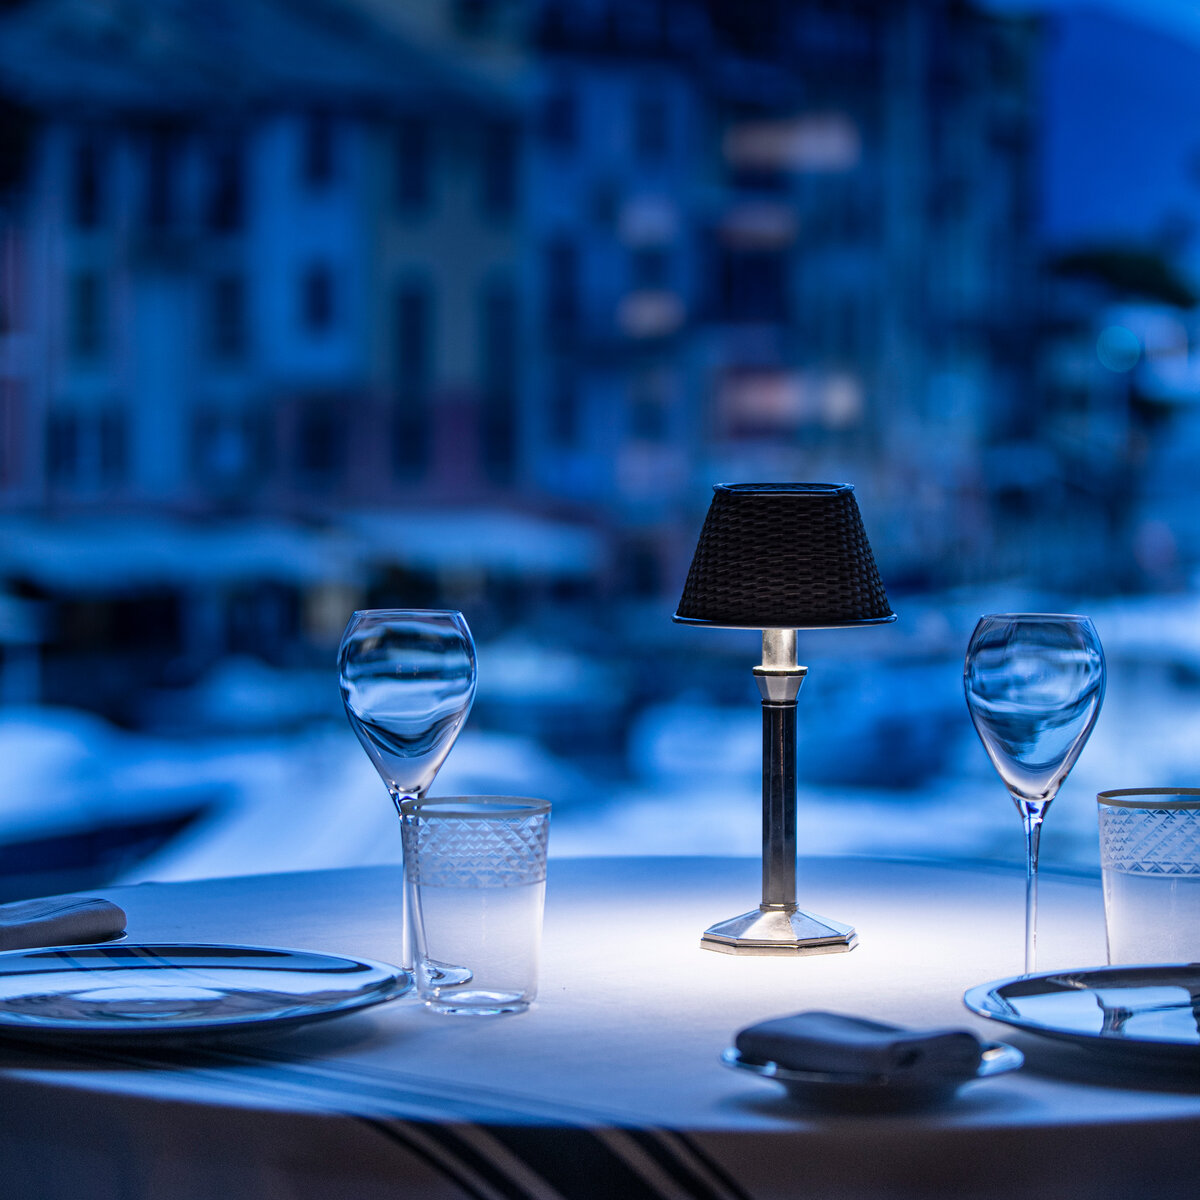 Restaurante Cracco Portofino | © Davide Groppi srl | All Rights Reserved